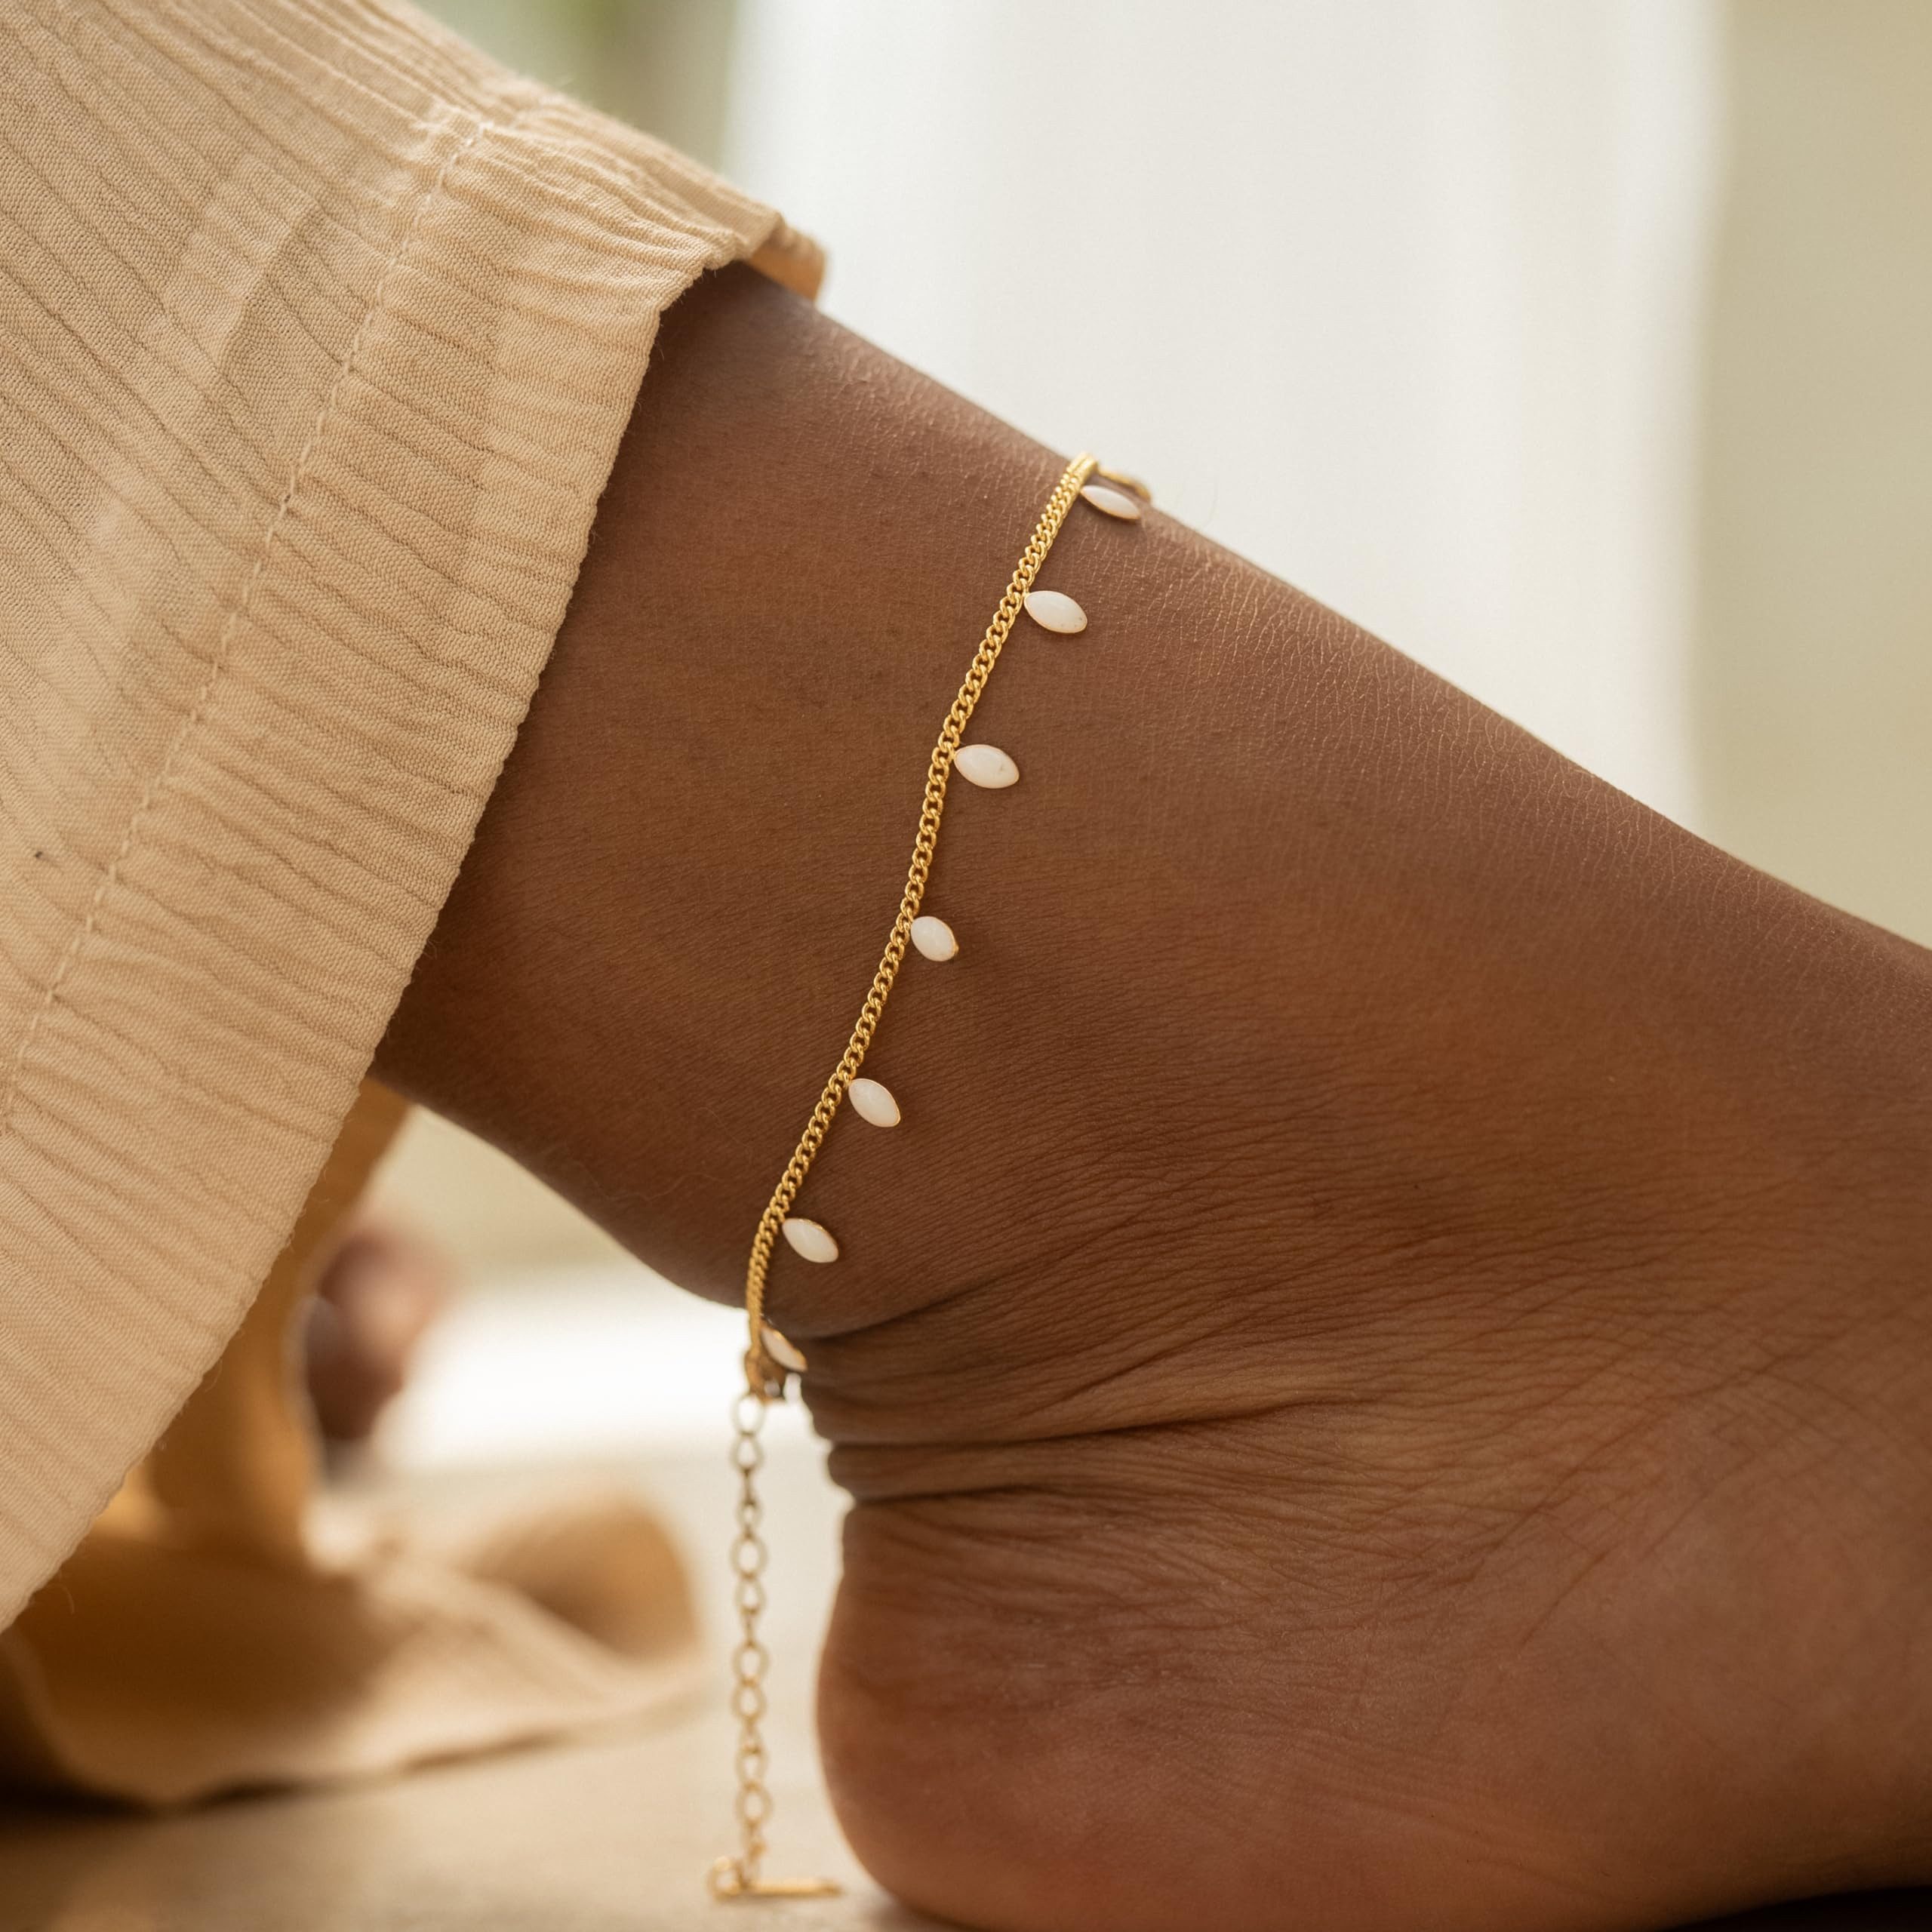 Made by Nami Fußkette Edelstahl Fußkettchen für Damen in Gold, Wasserfest mit Perlen, 21,5cm lang mit 6,1cm Verstellkette, Surfer oder Boho Schmuck